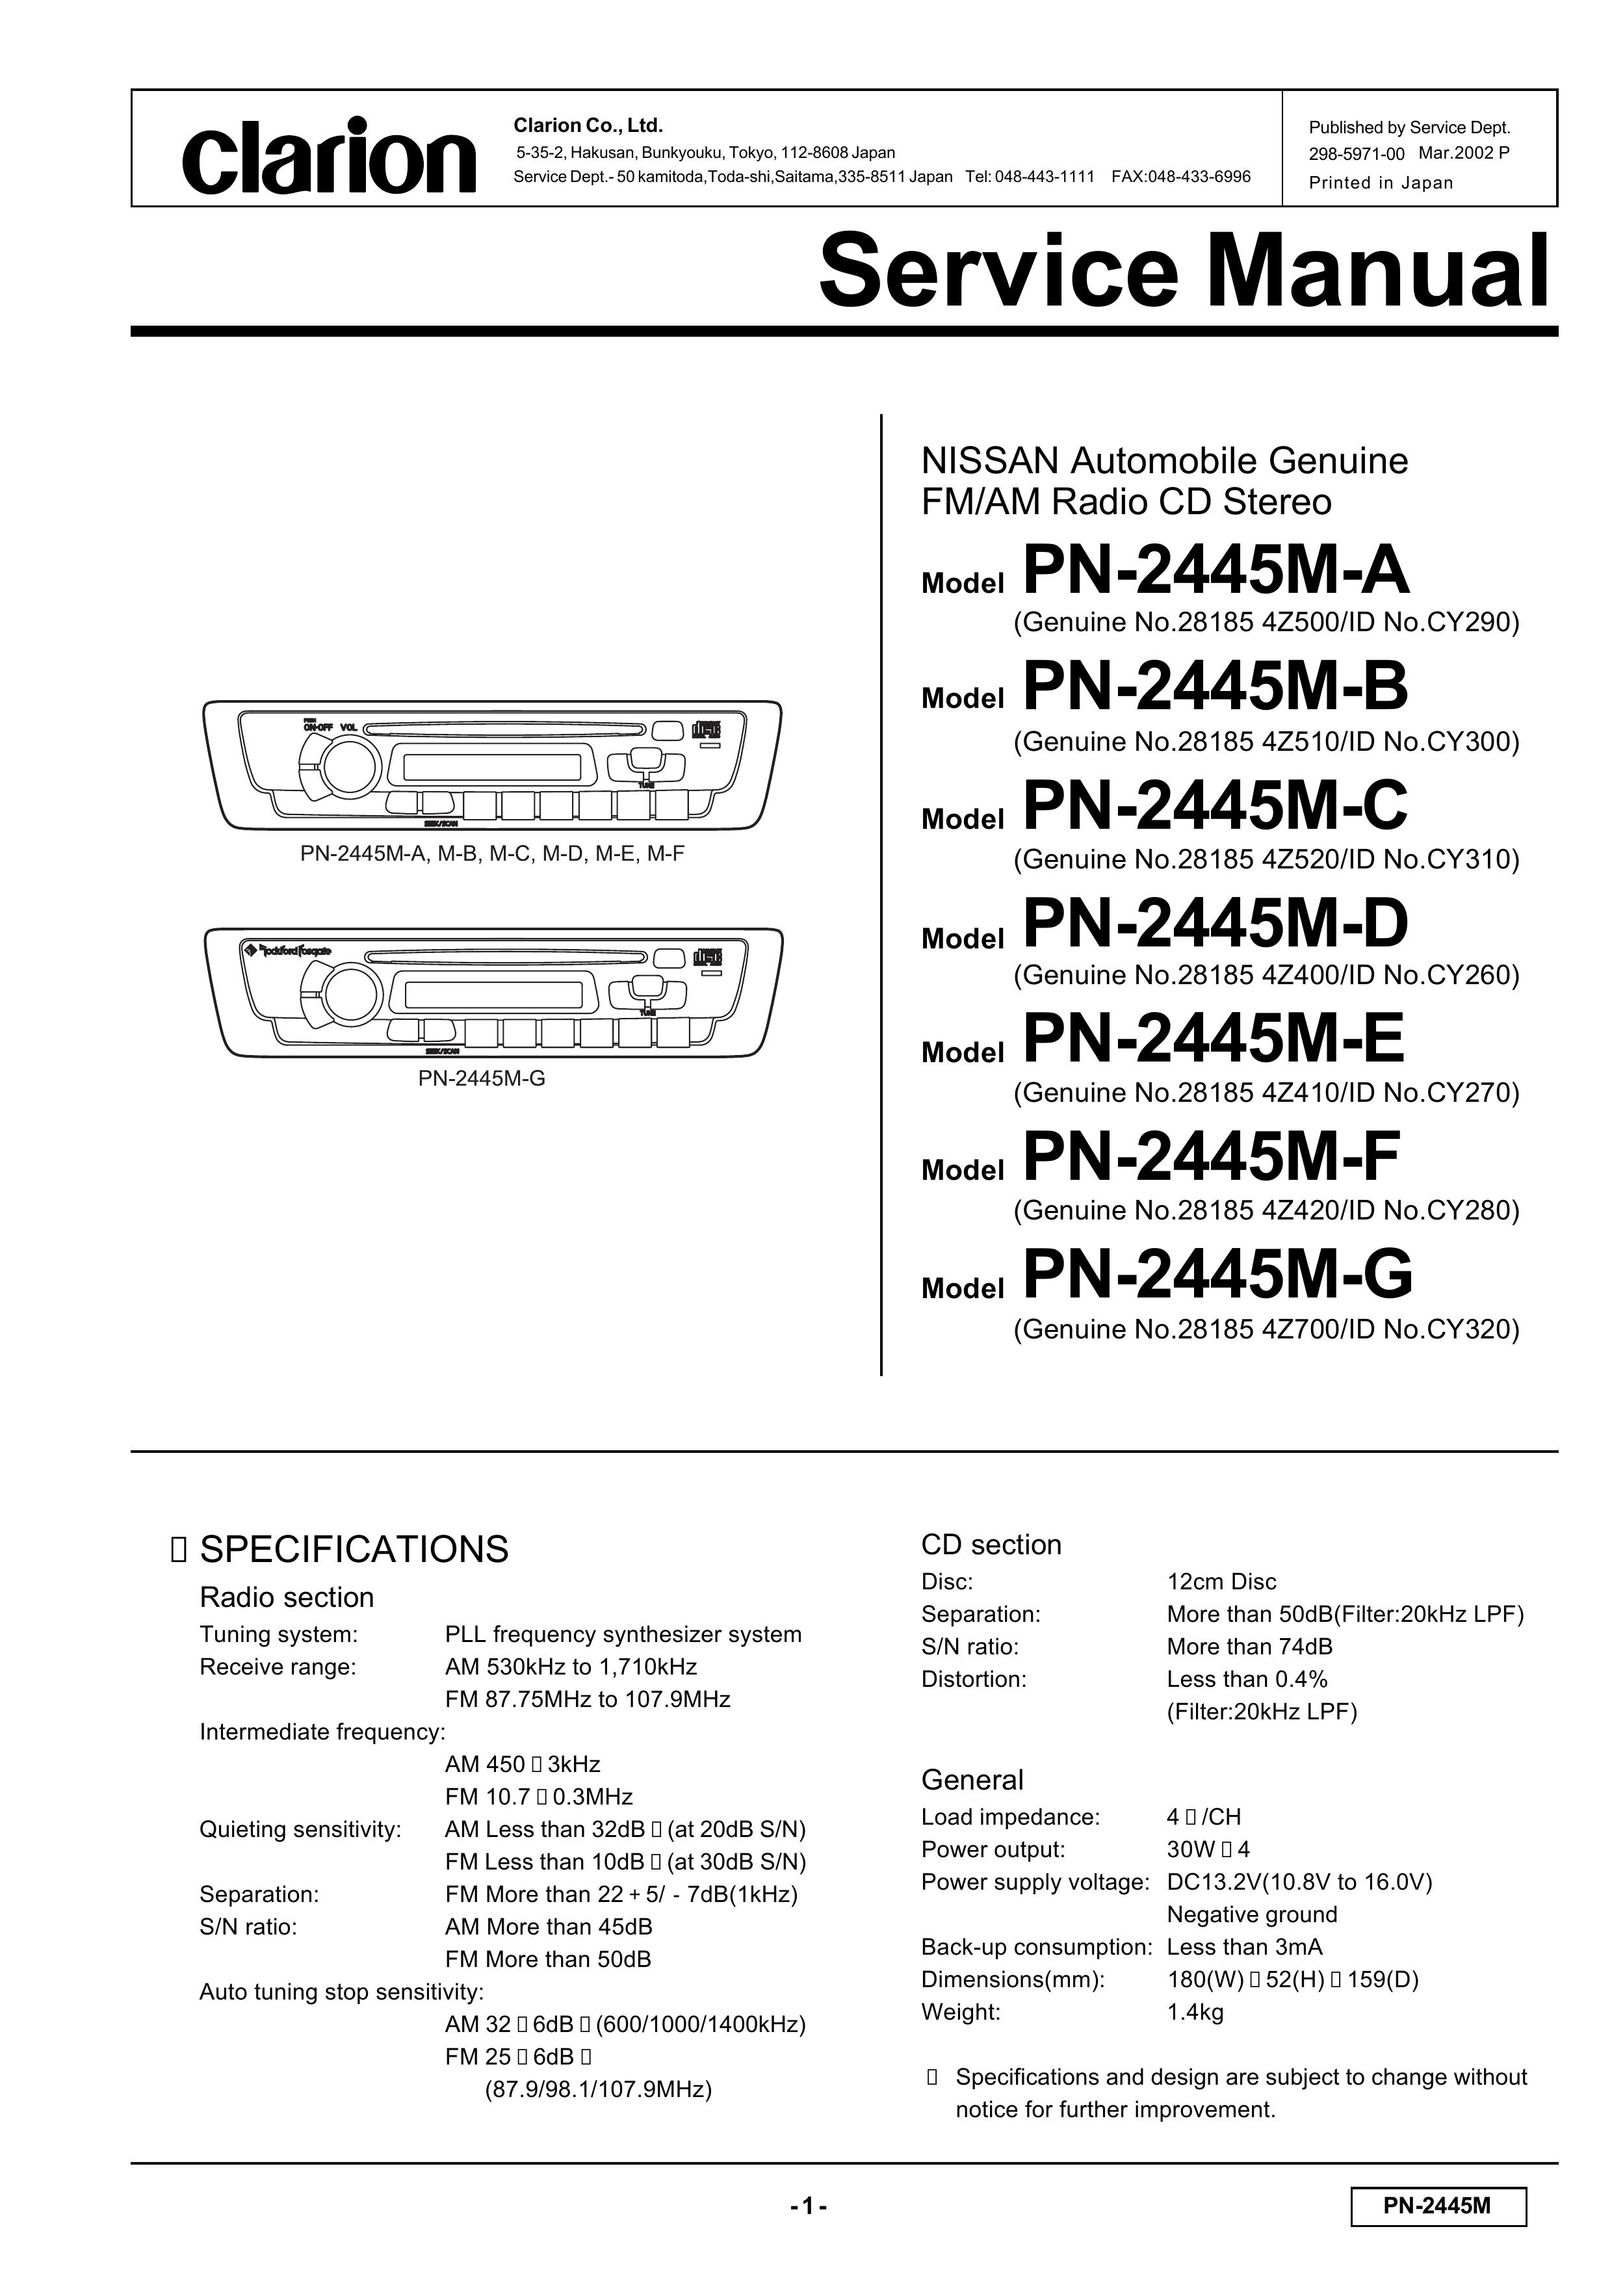 Clarion PN-2445M-E Radio User Manual